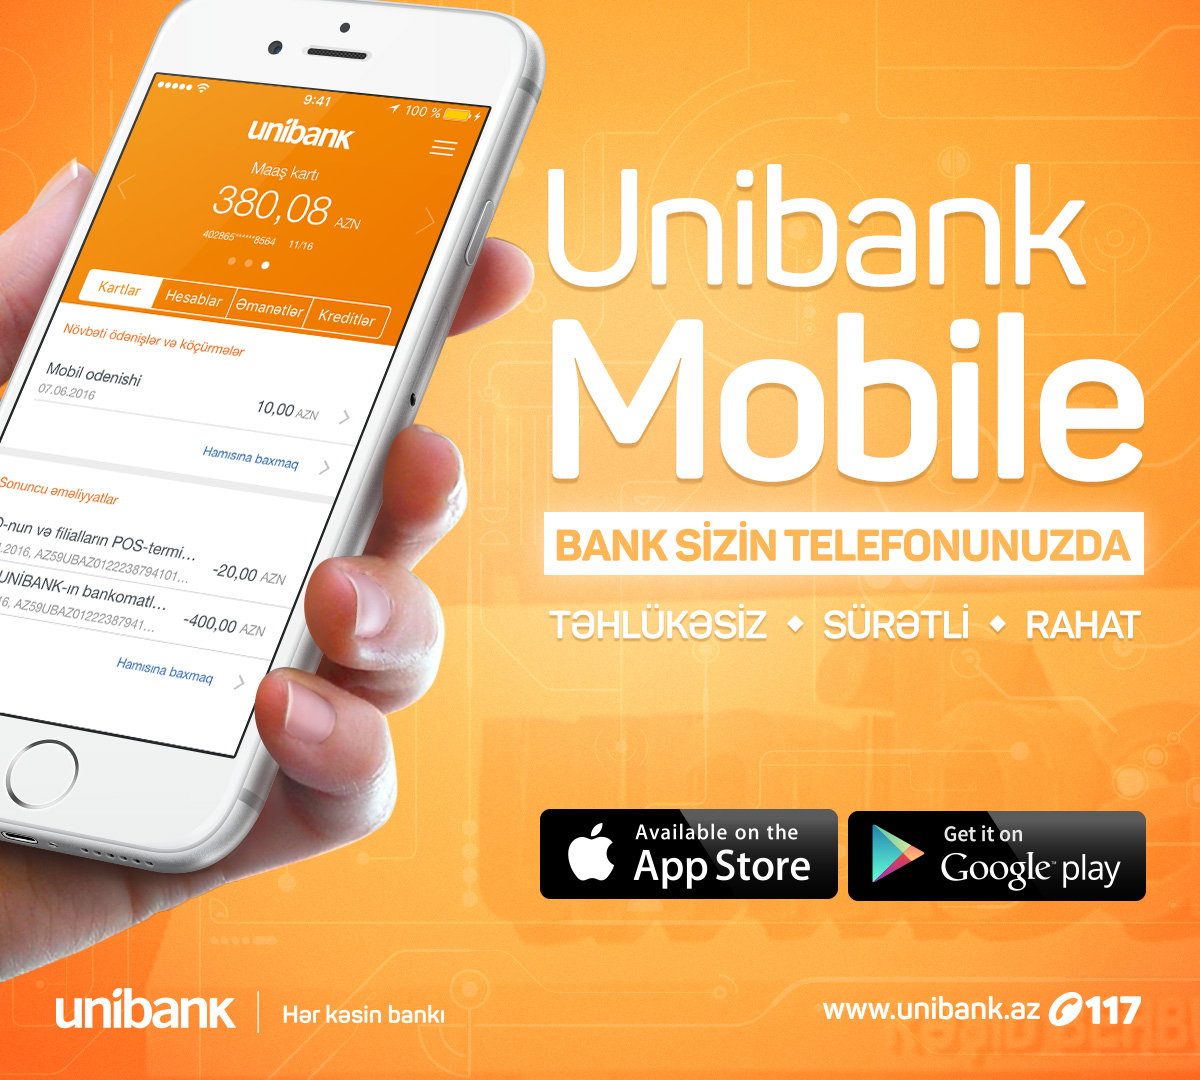 Unibank-dan mobil bank xidməti - Artiq sizin bankınız sizin telefonunuzdur